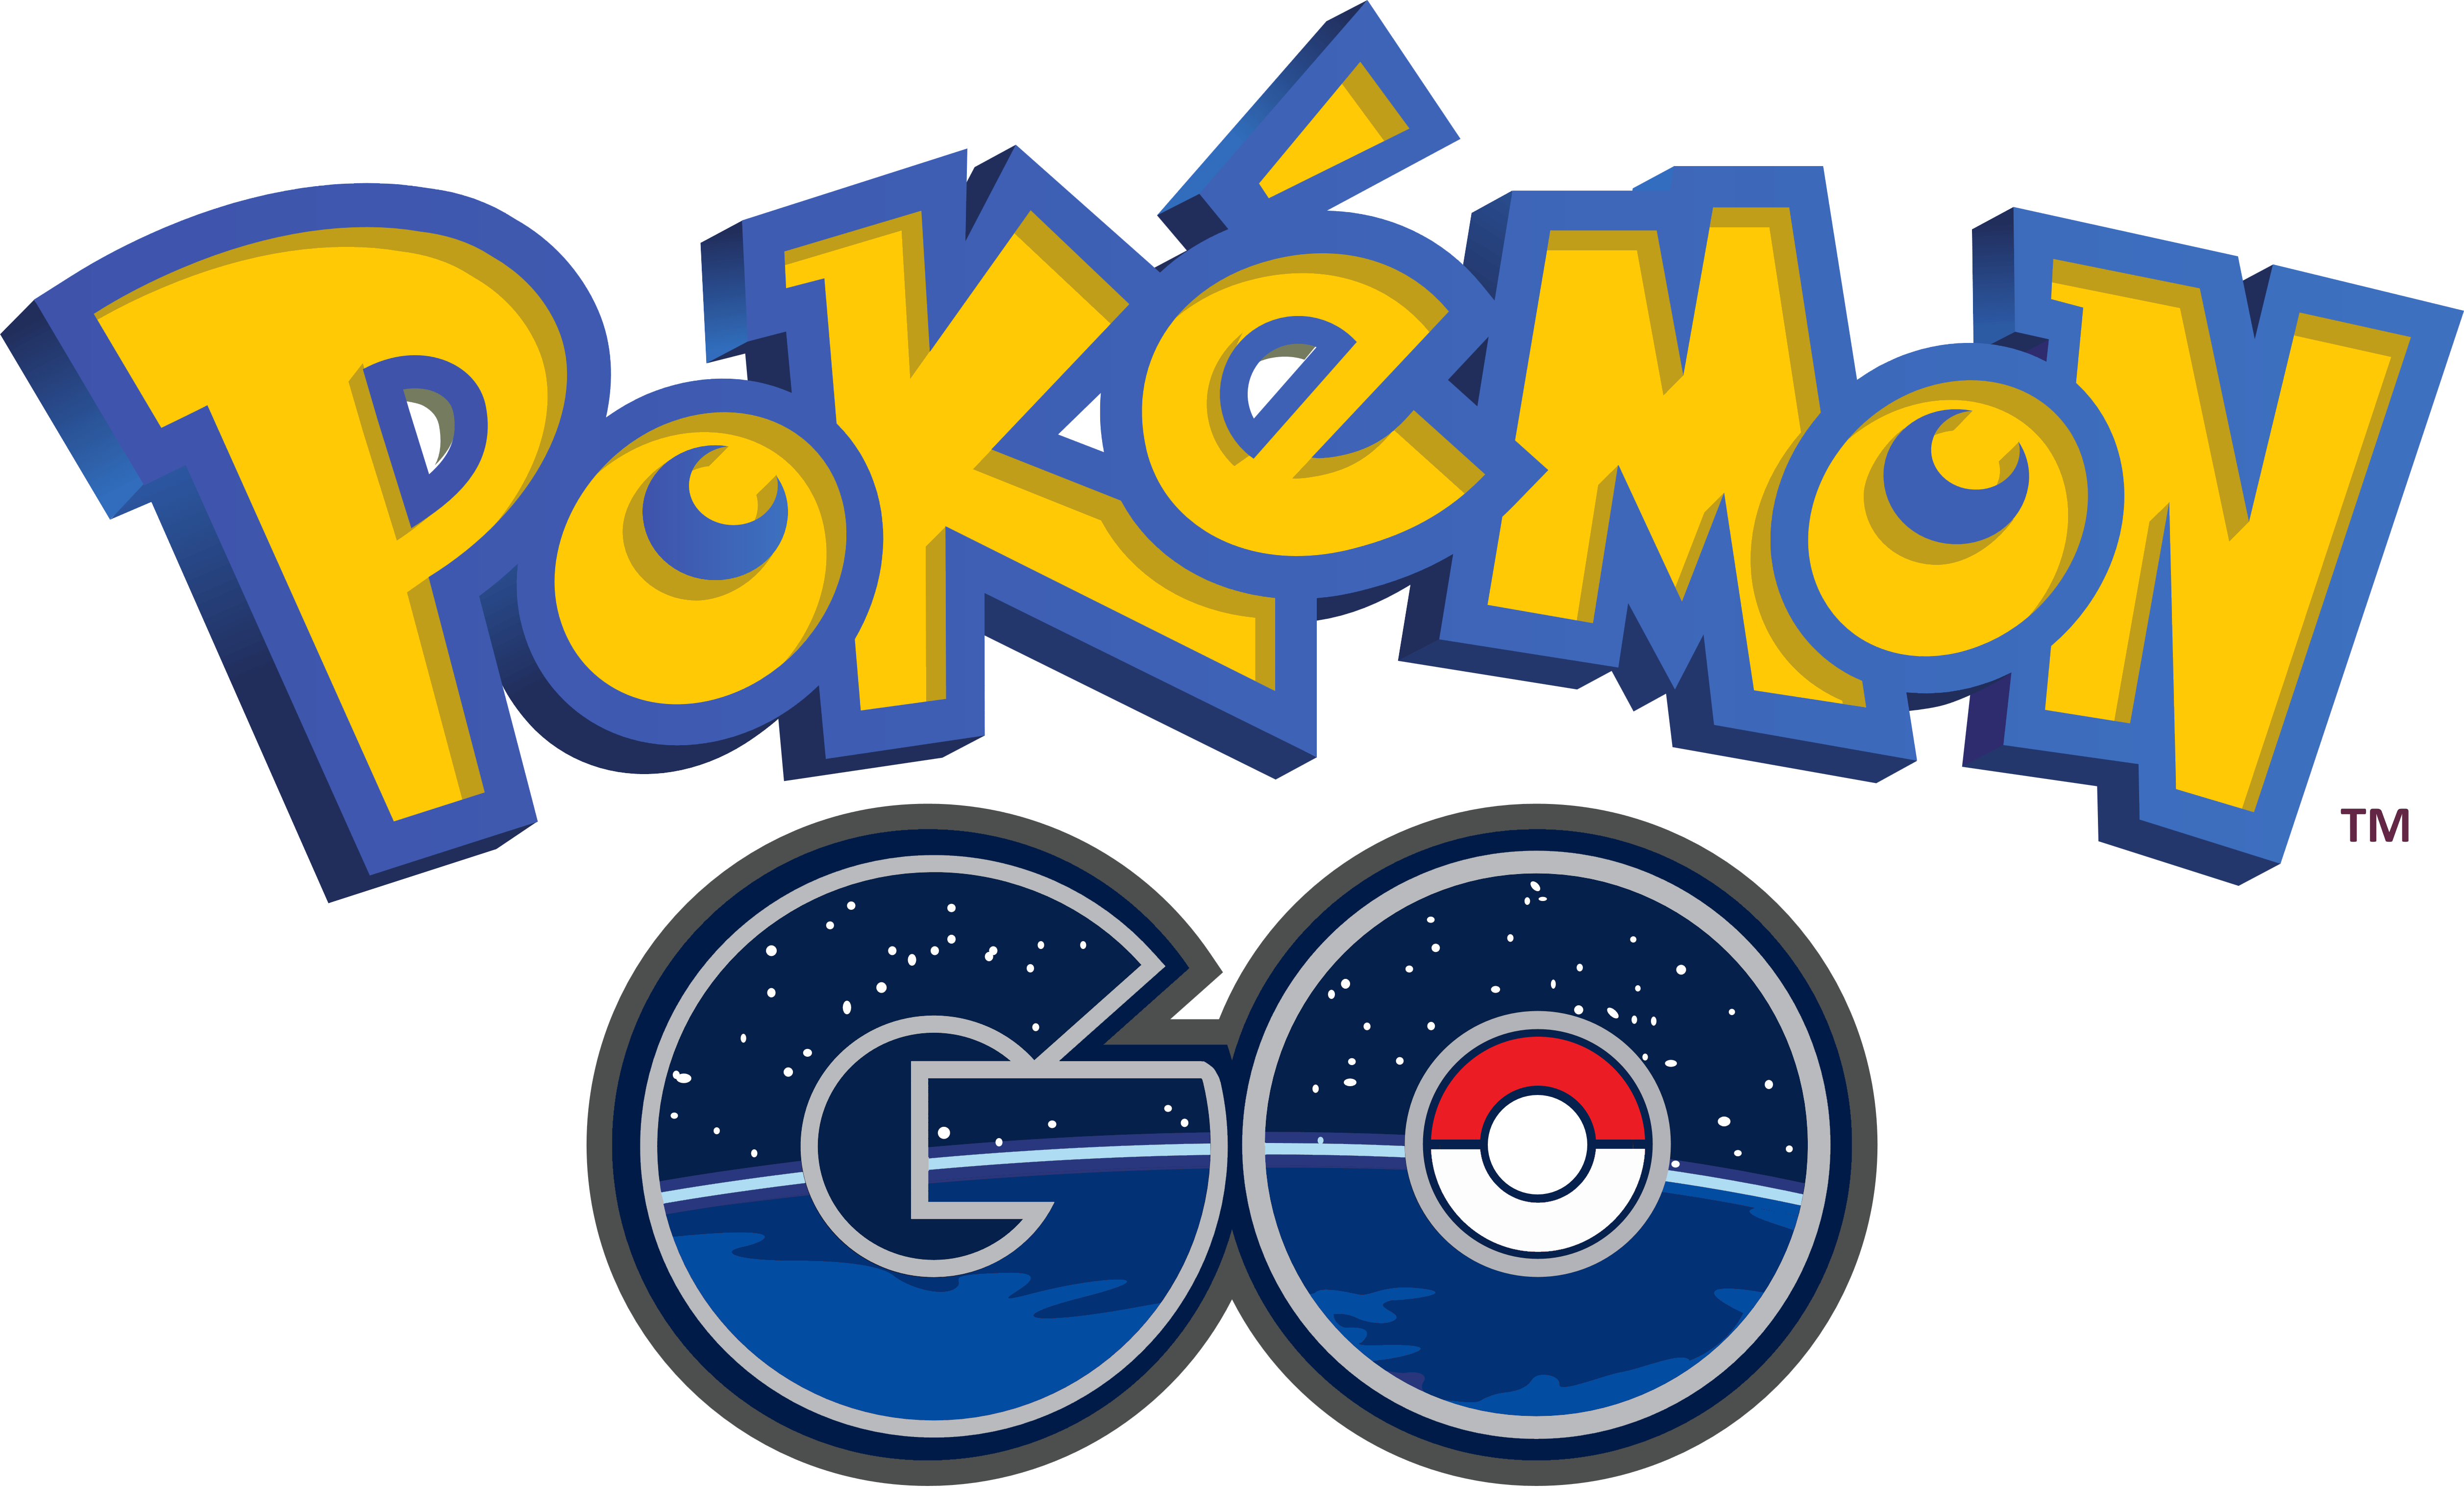 Pokeman Logo - Pokémon Go – Logos Download